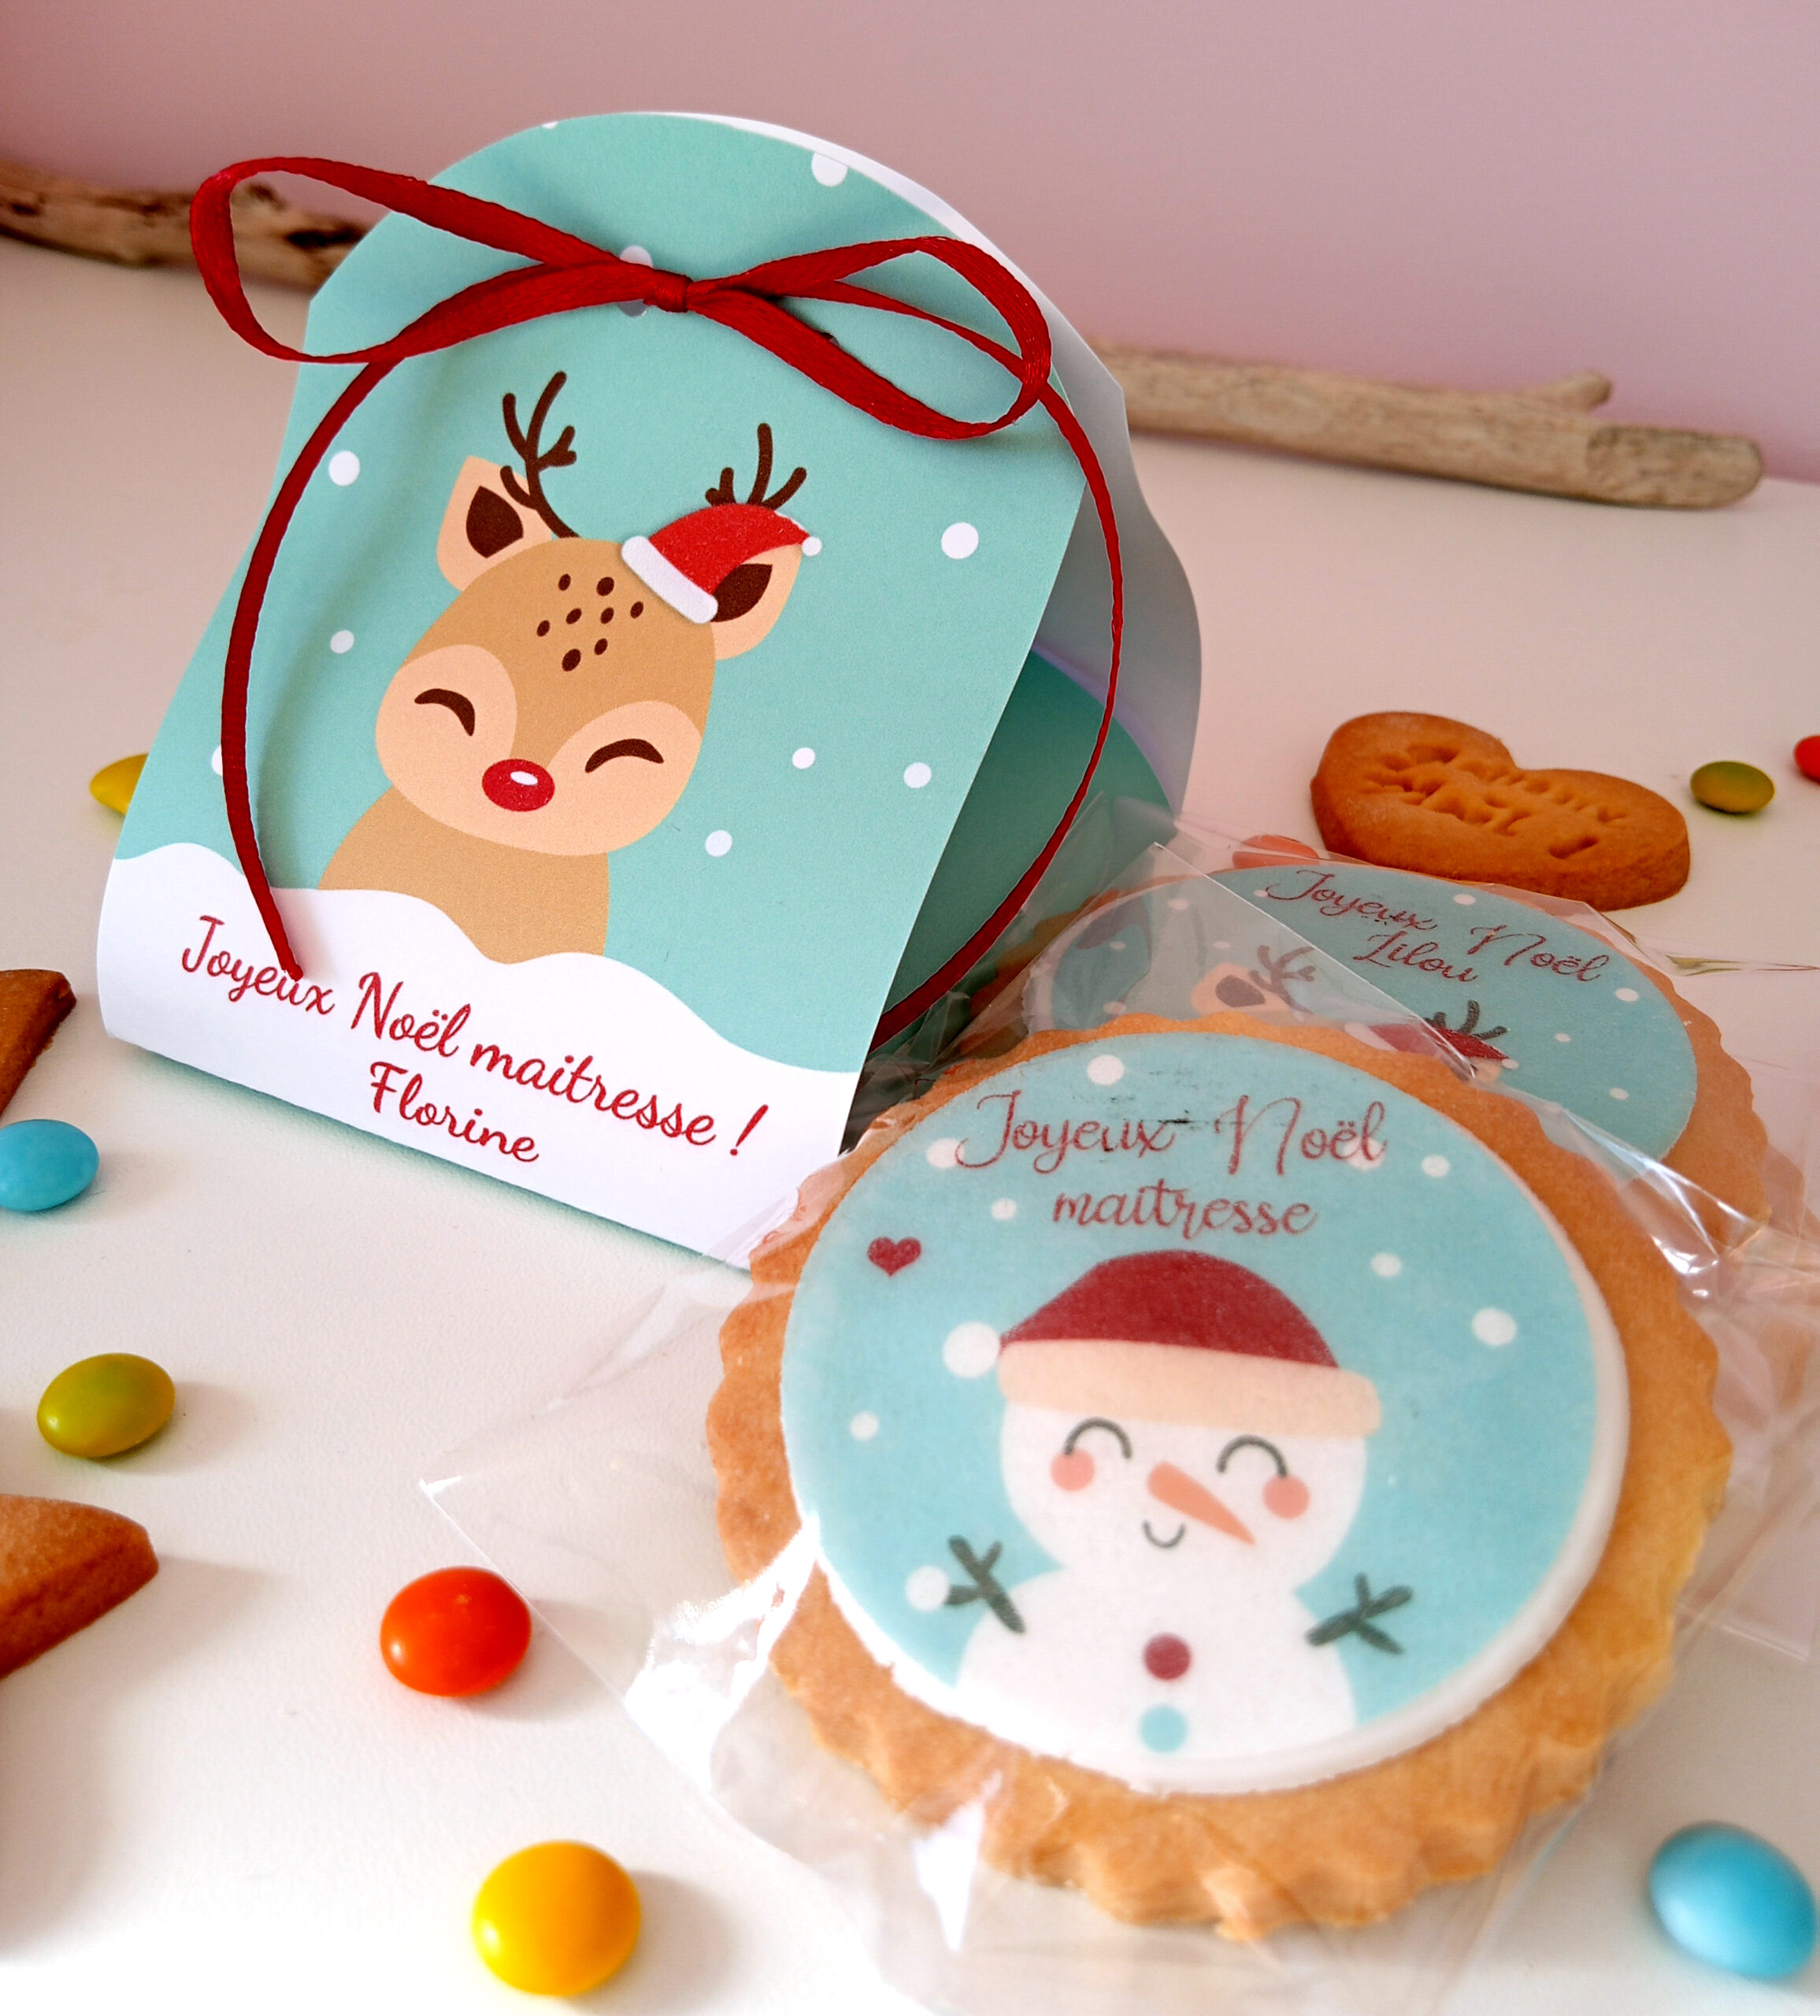 COFFRET CADEAU de Noël, 3 biscuits décorés & personnalisés